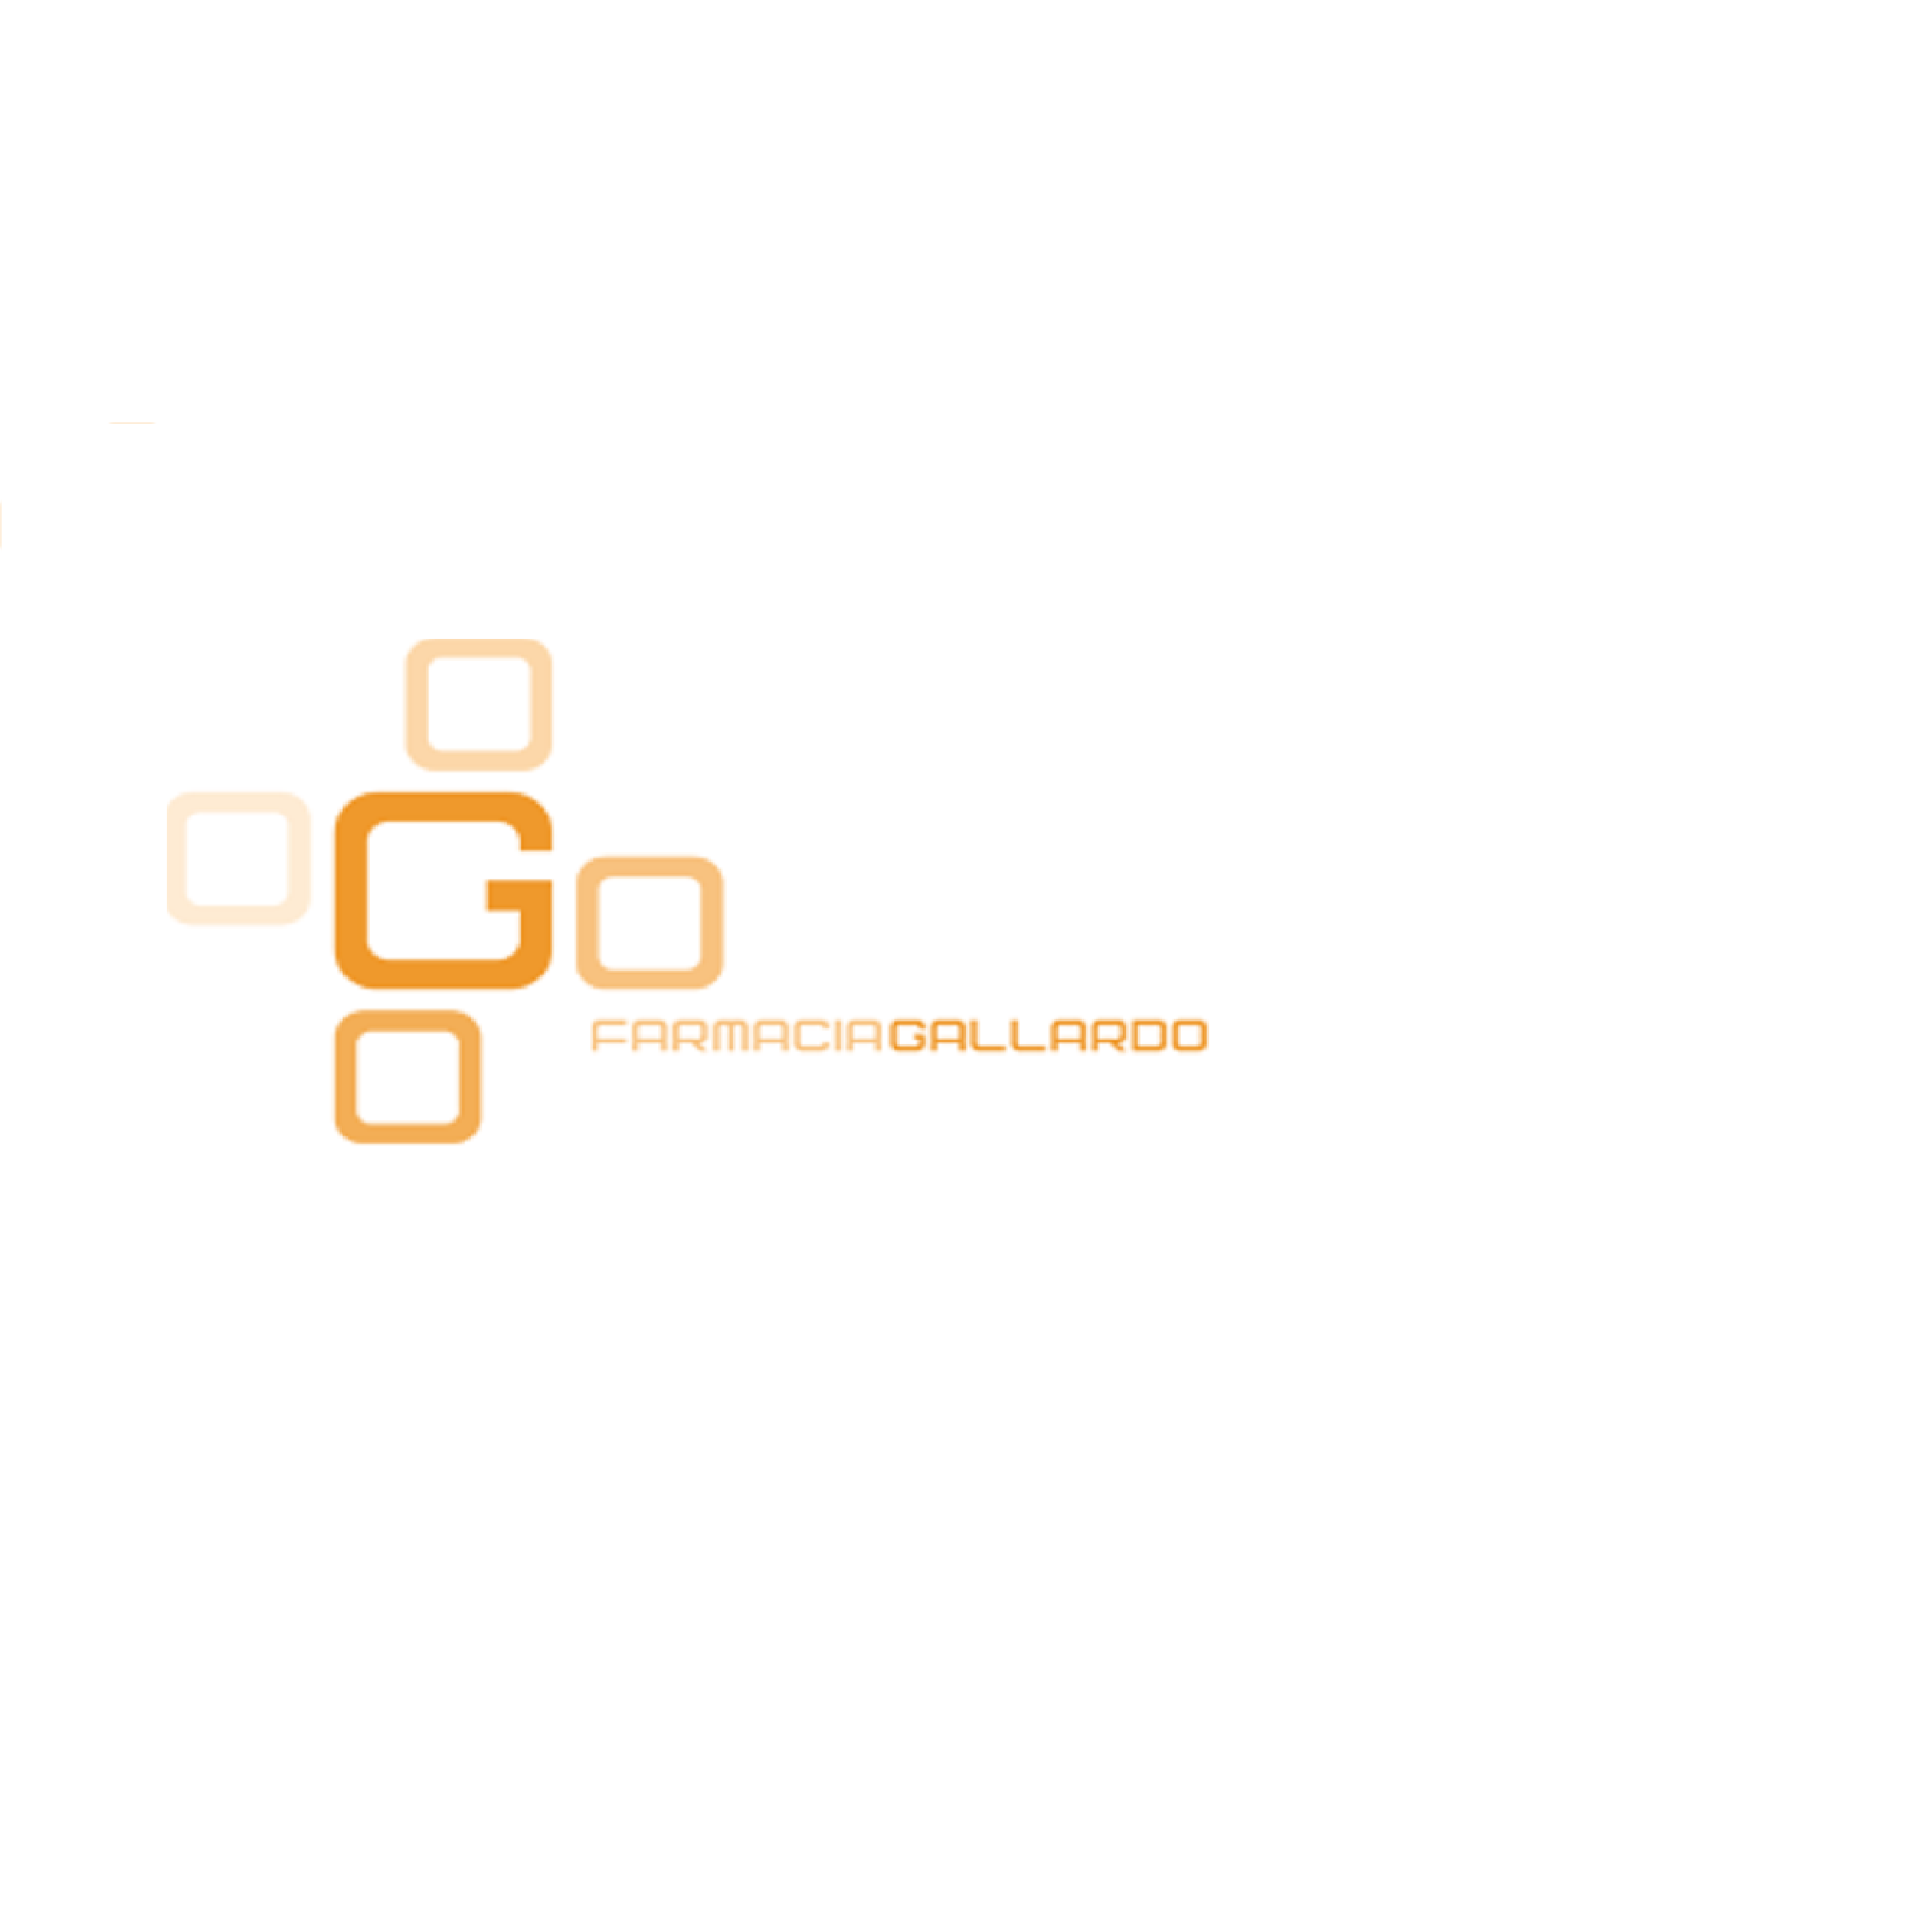 Farmacia Gallardo Alonso Logo